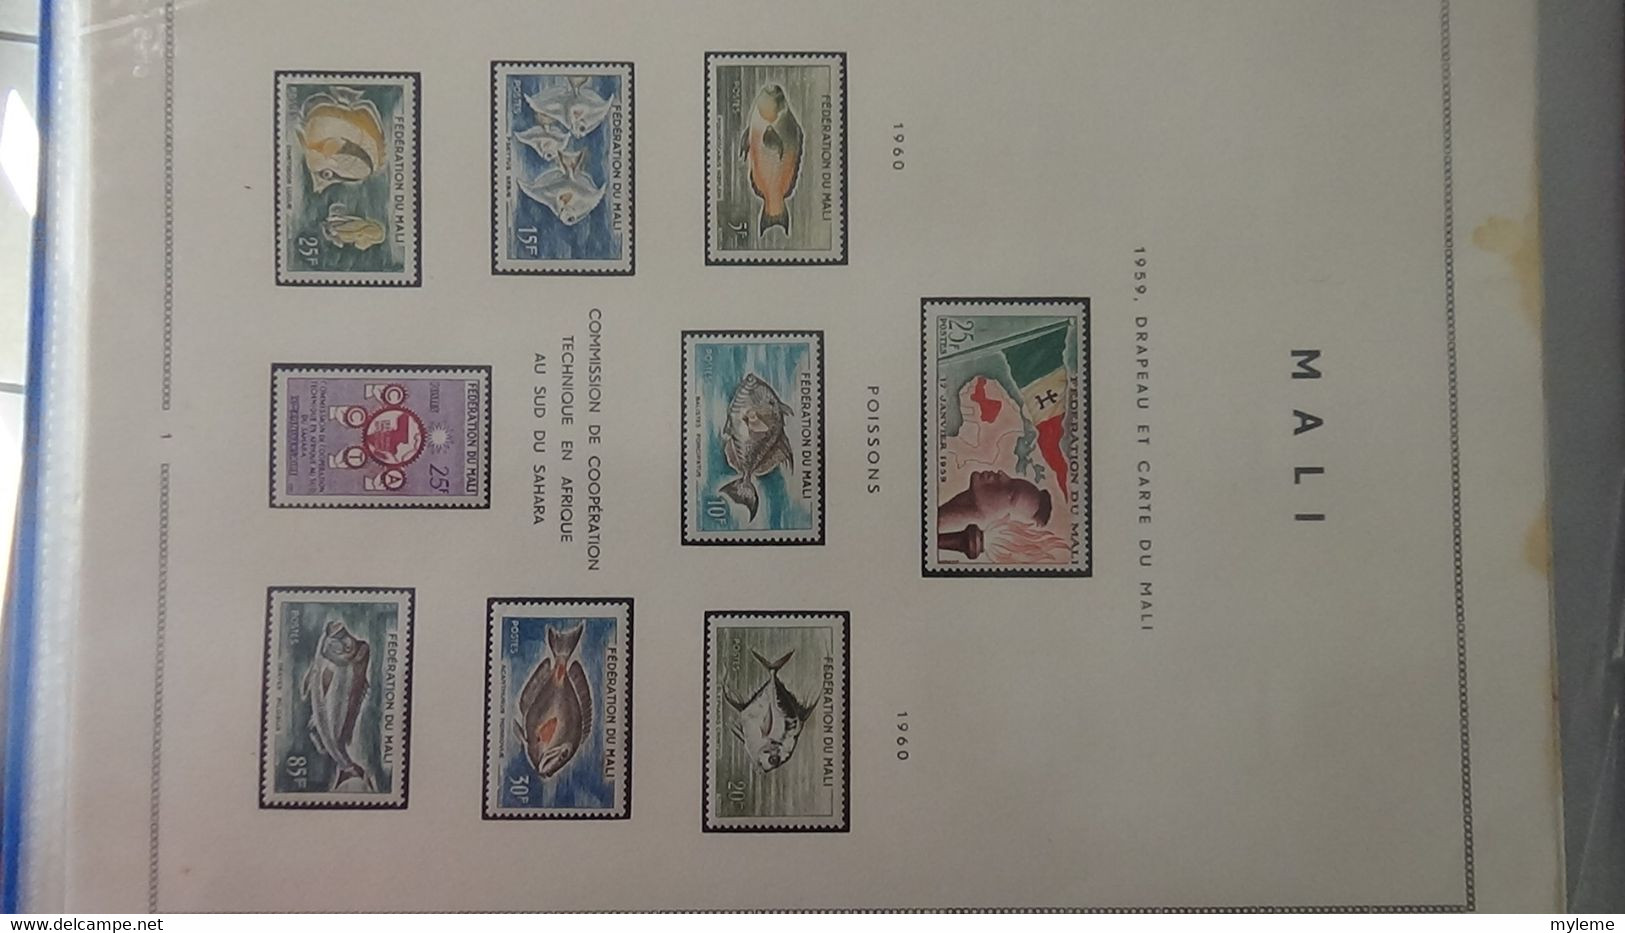 AD65 Collection en classeur de timbres et blocs ** et * de Haute Volta, Madagascar et Mali ...  A saisir !!!